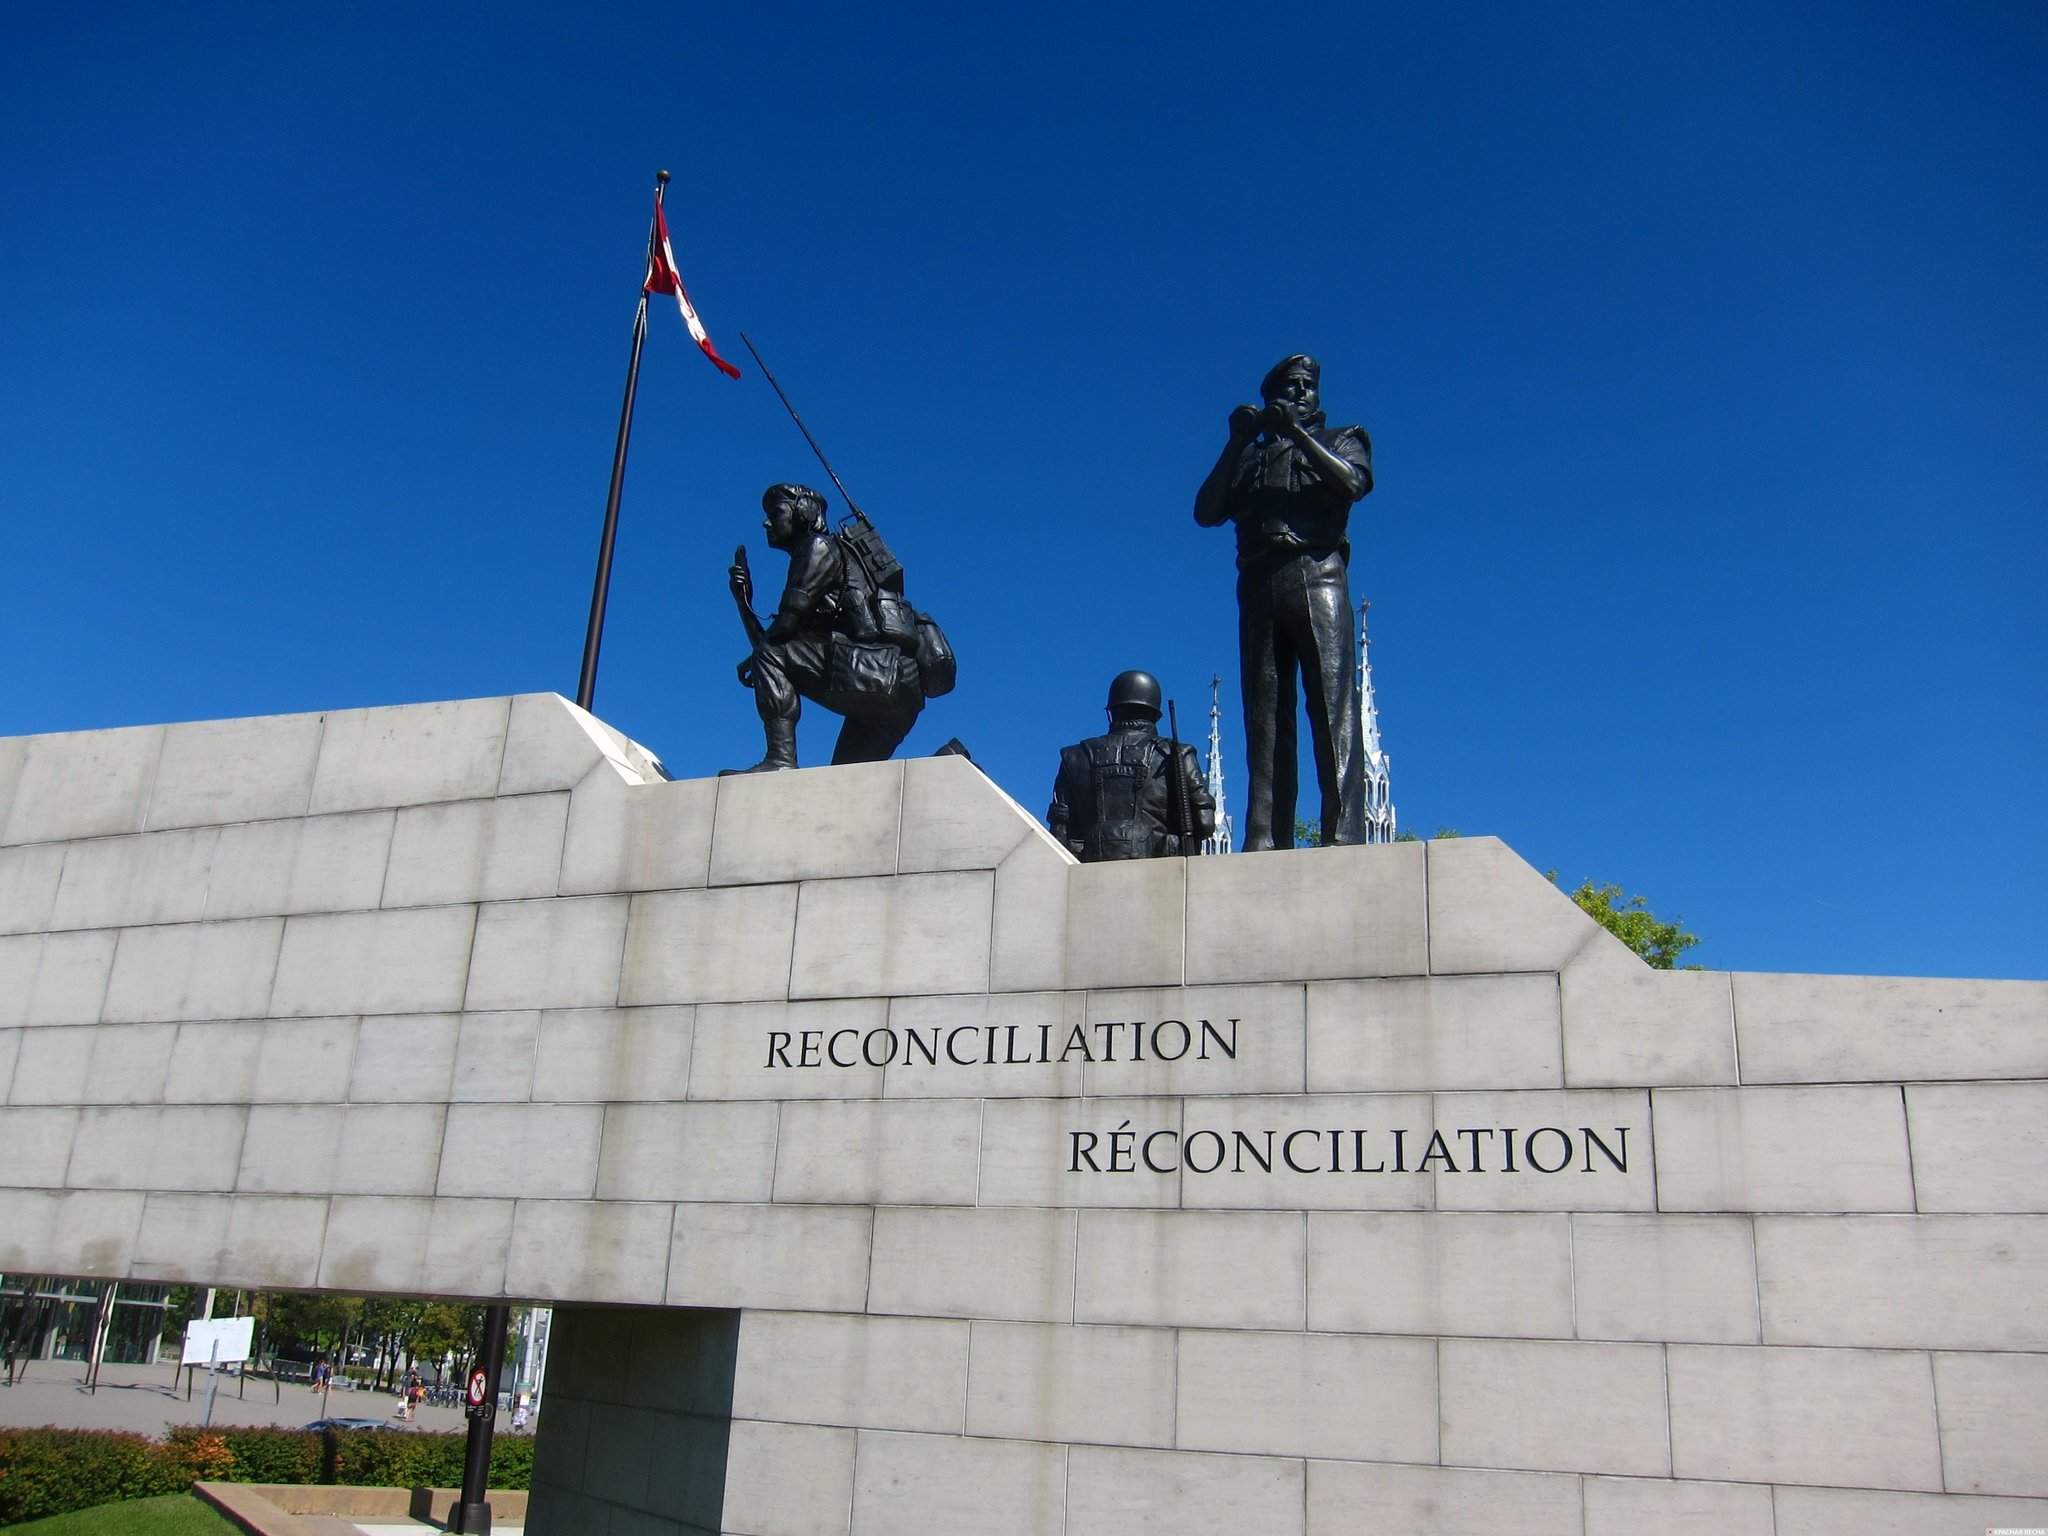 Канадские миротворцы. Reconciliation. Оттава. Канада.